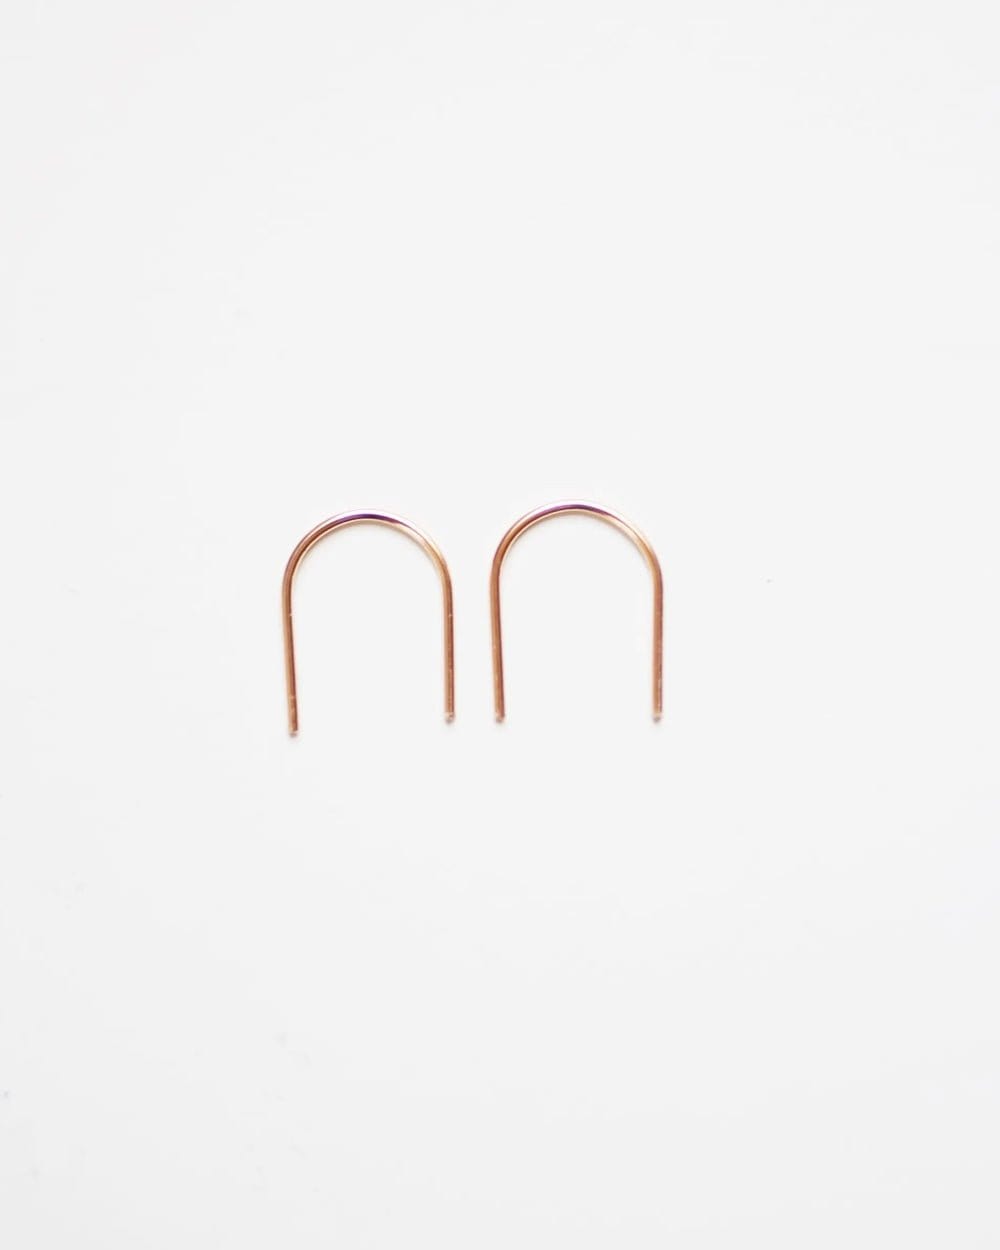 Mini Arc Minimalist Wire Earrings